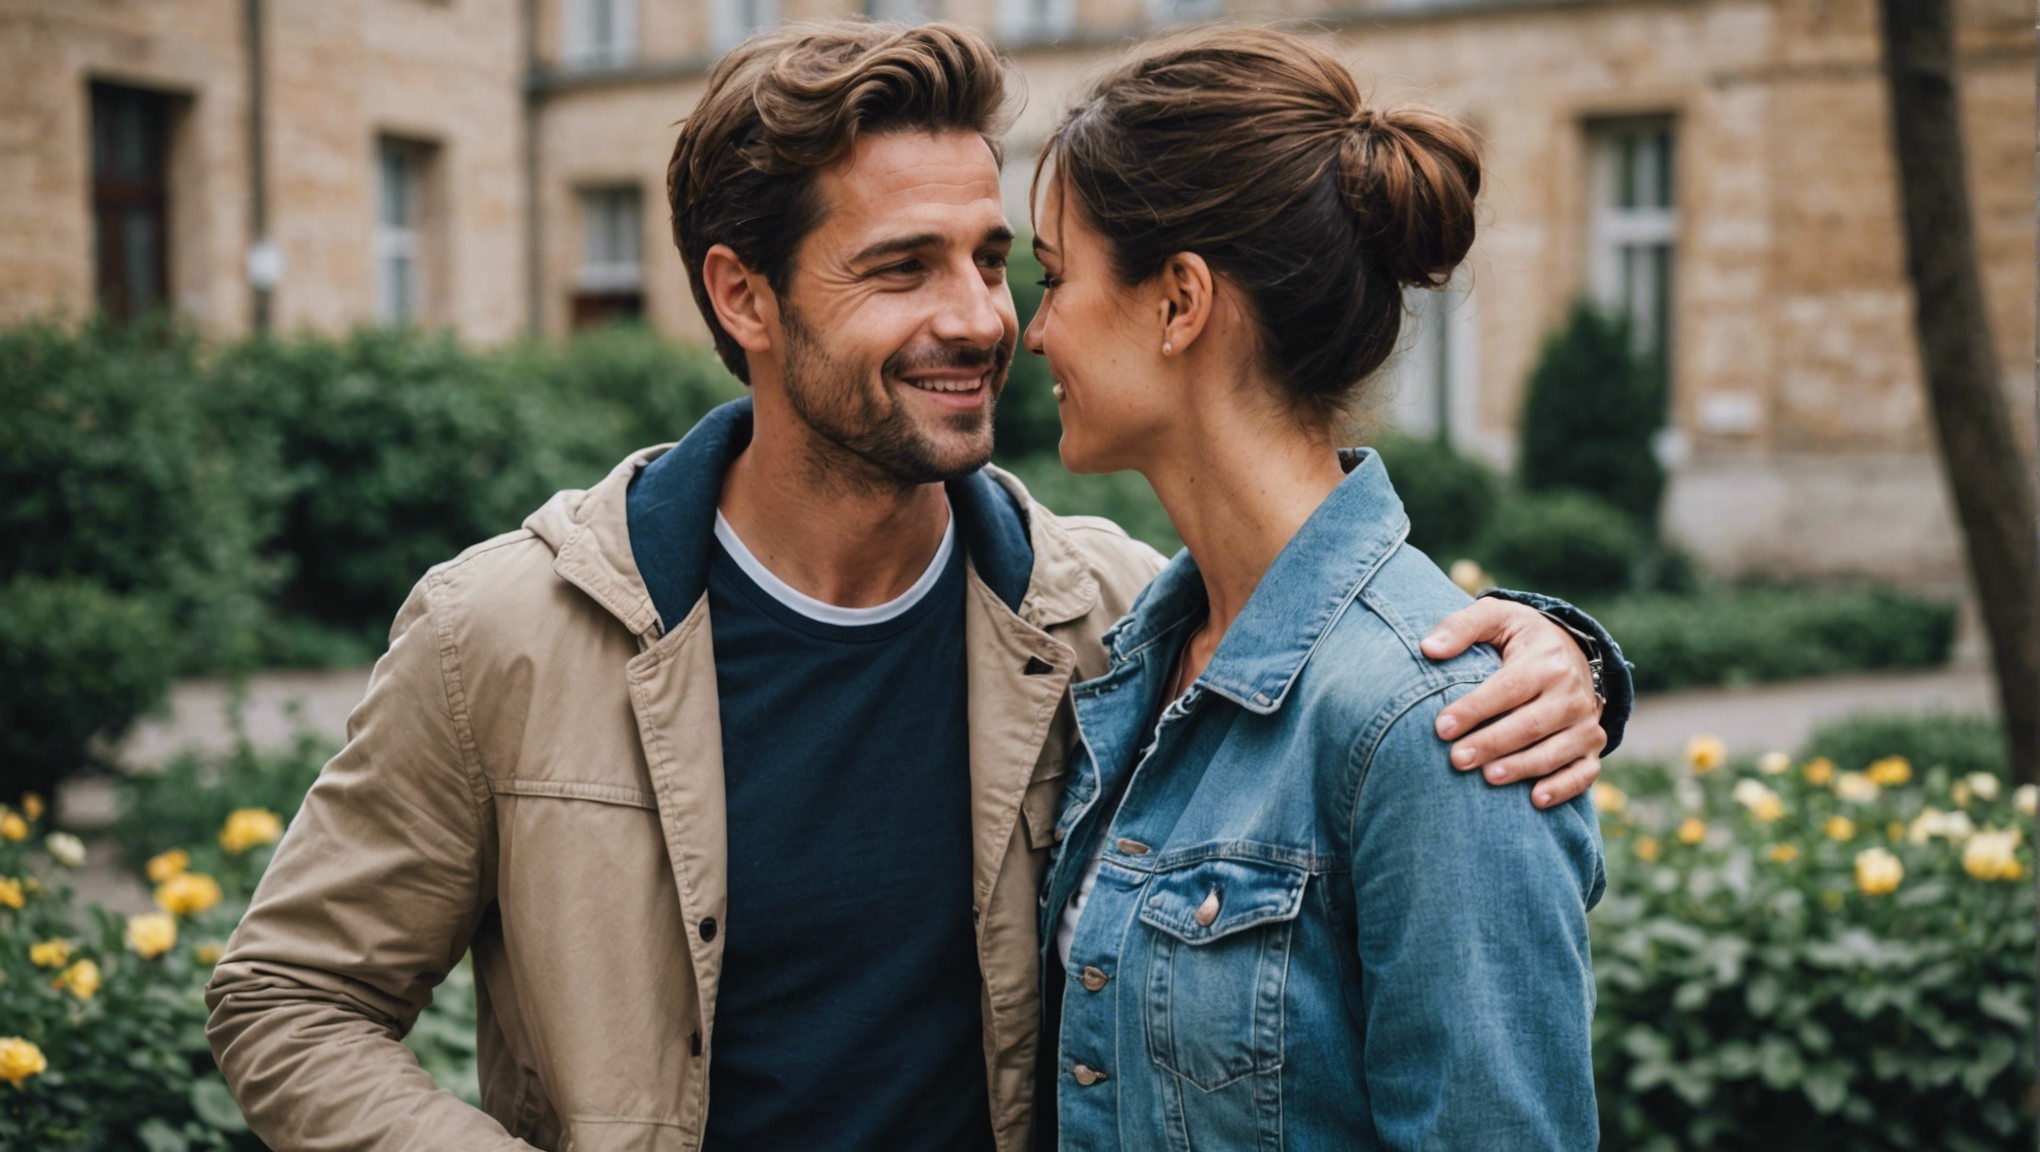 découvrez comment savoir si vous êtes heureuse dans votre couple avec nos conseils et astuces pour une relation épanouie.